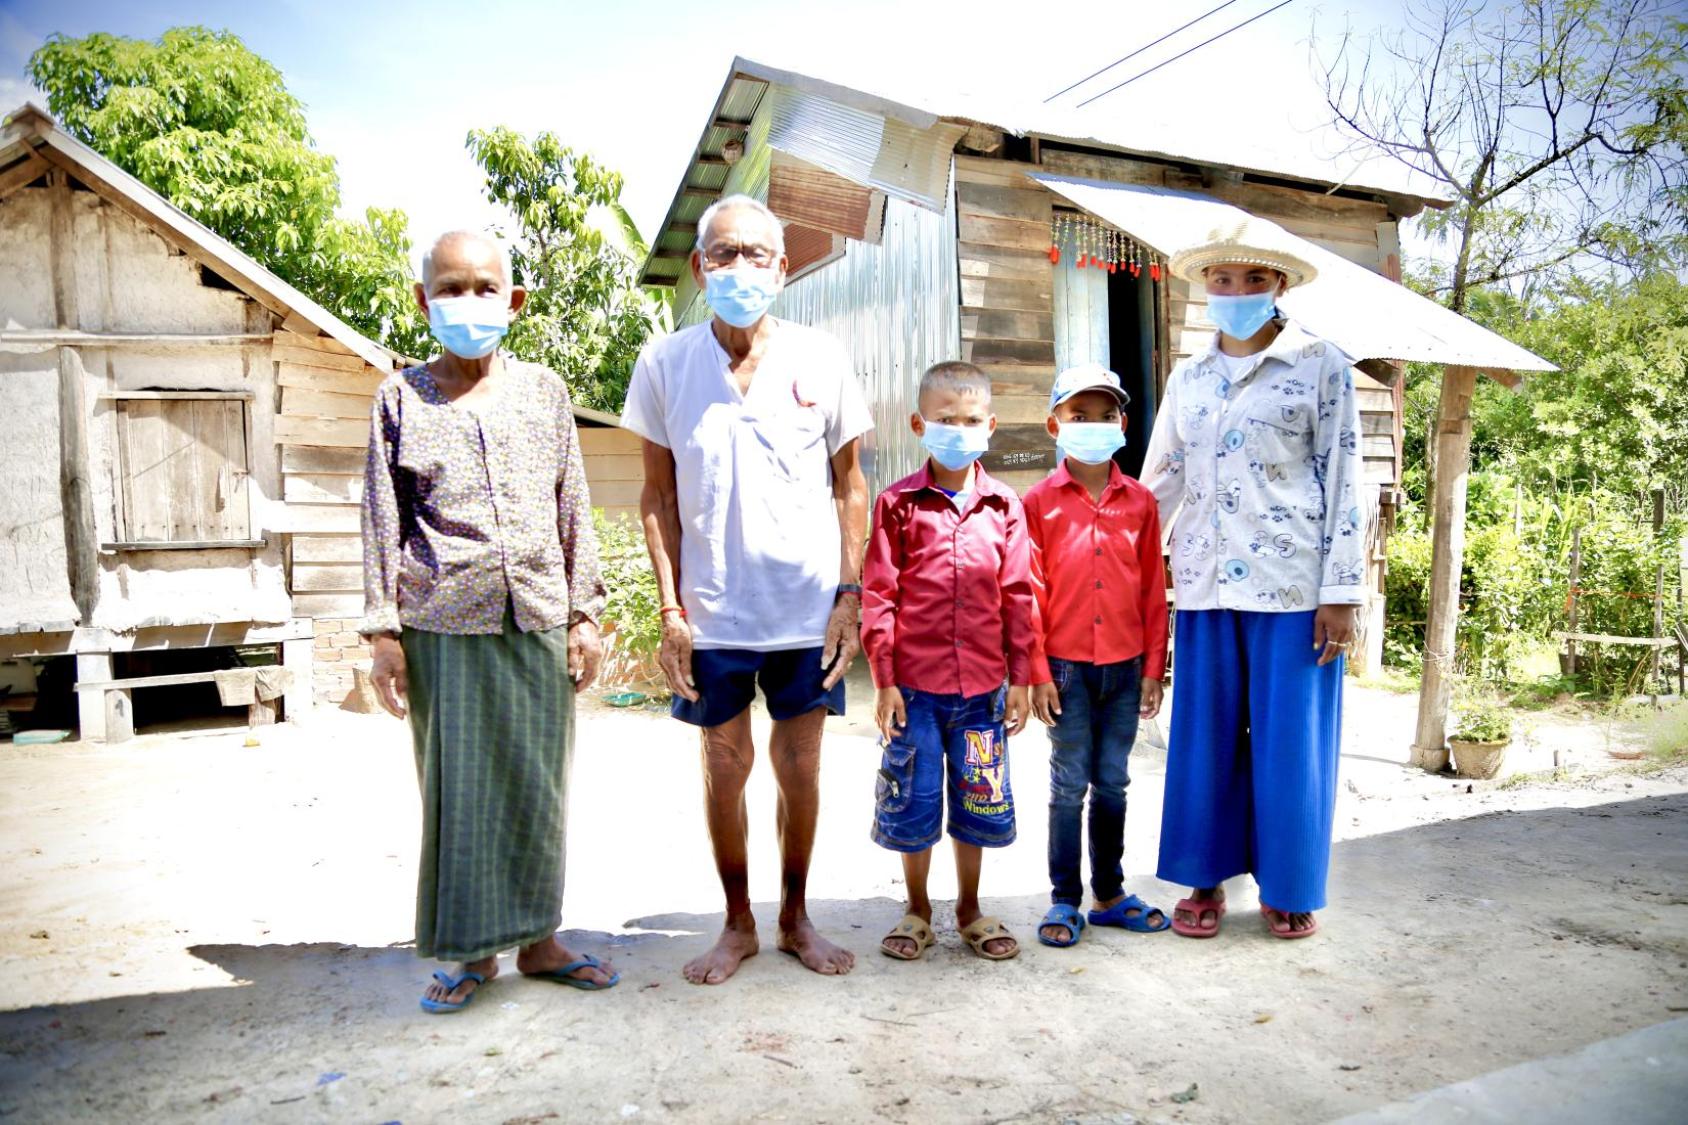 Les membres d’une famille cambodgienne portant chacun un masque de protection respiratoire se tiennent de debout, côte à côte, face caméra, devant de petites maisons en bois, par une journée ensoleillée.